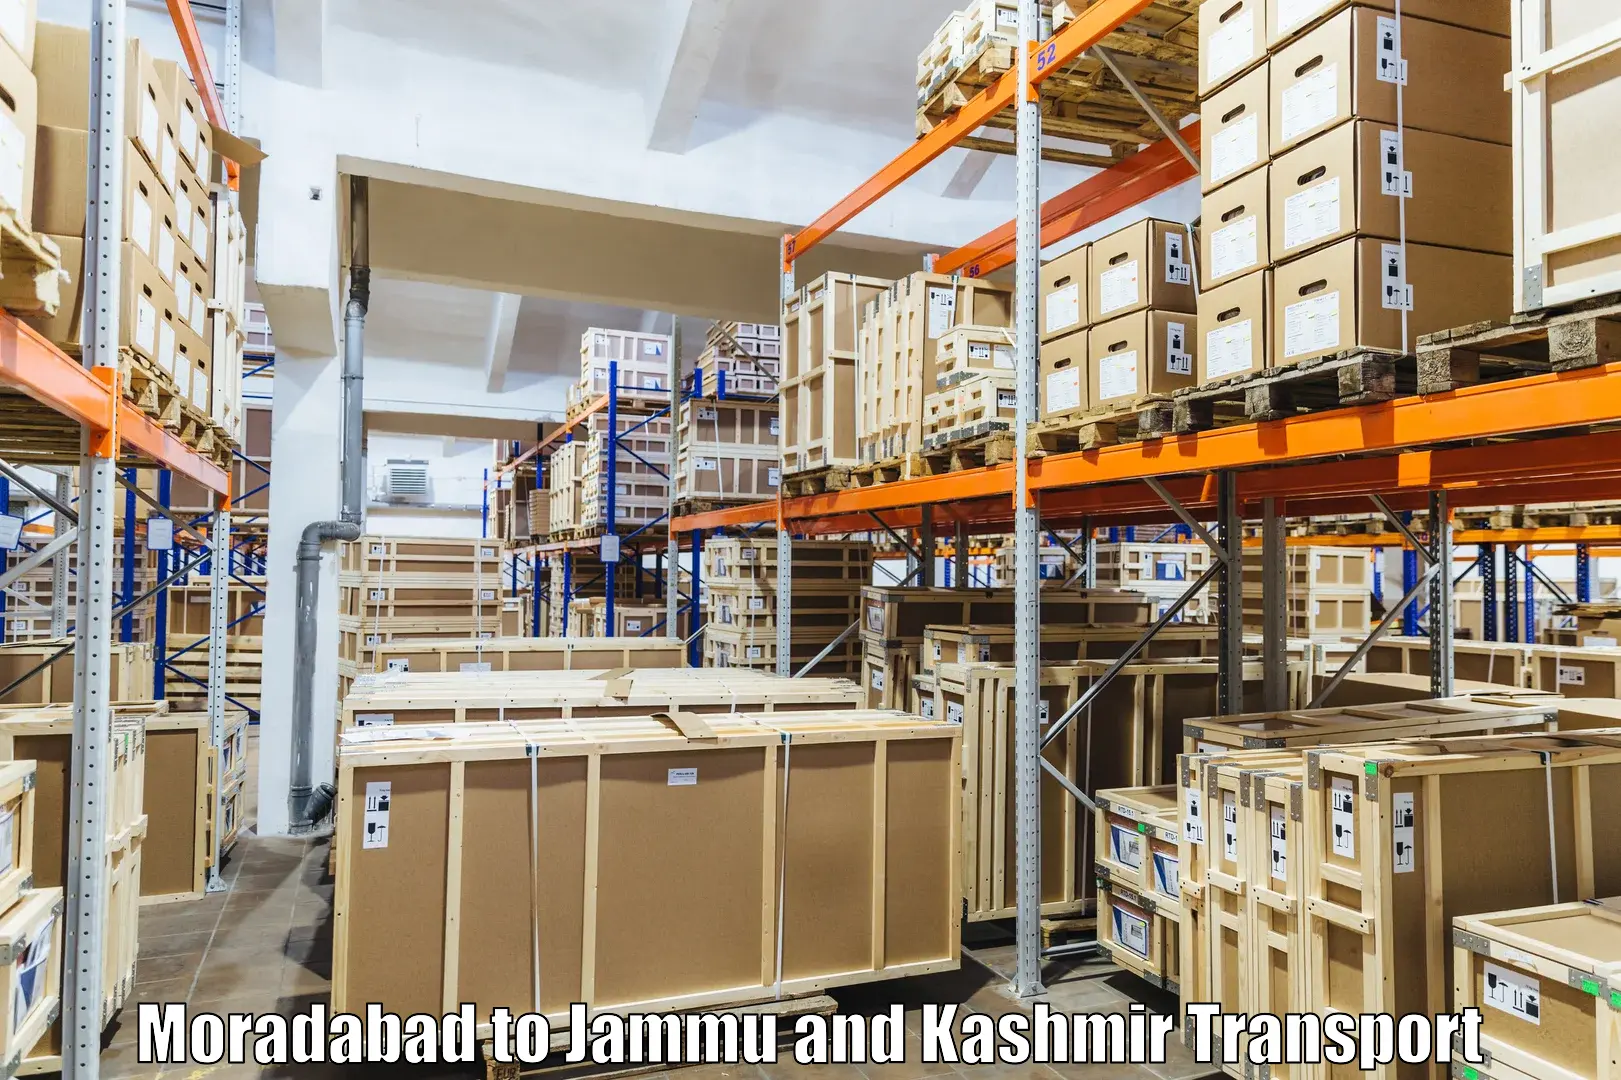 Air freight transport services Moradabad to IIT Jammu